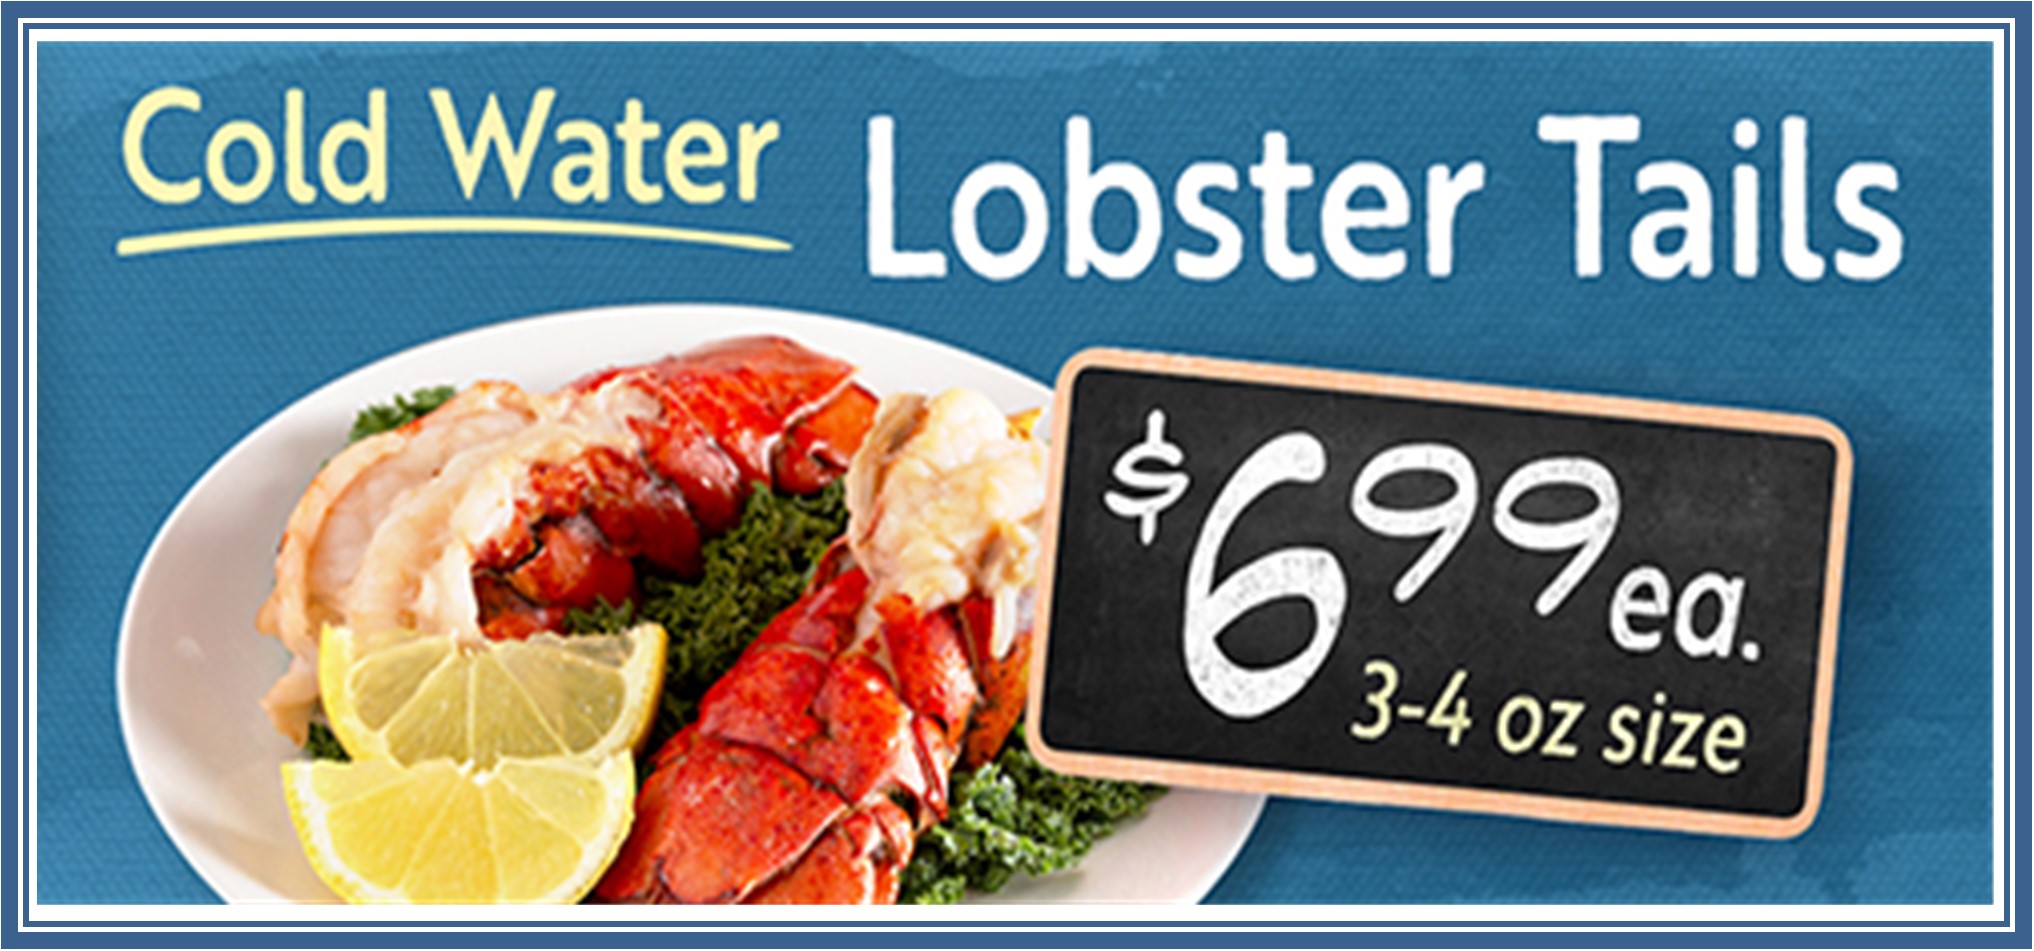 Lobster Tails 699.jpg